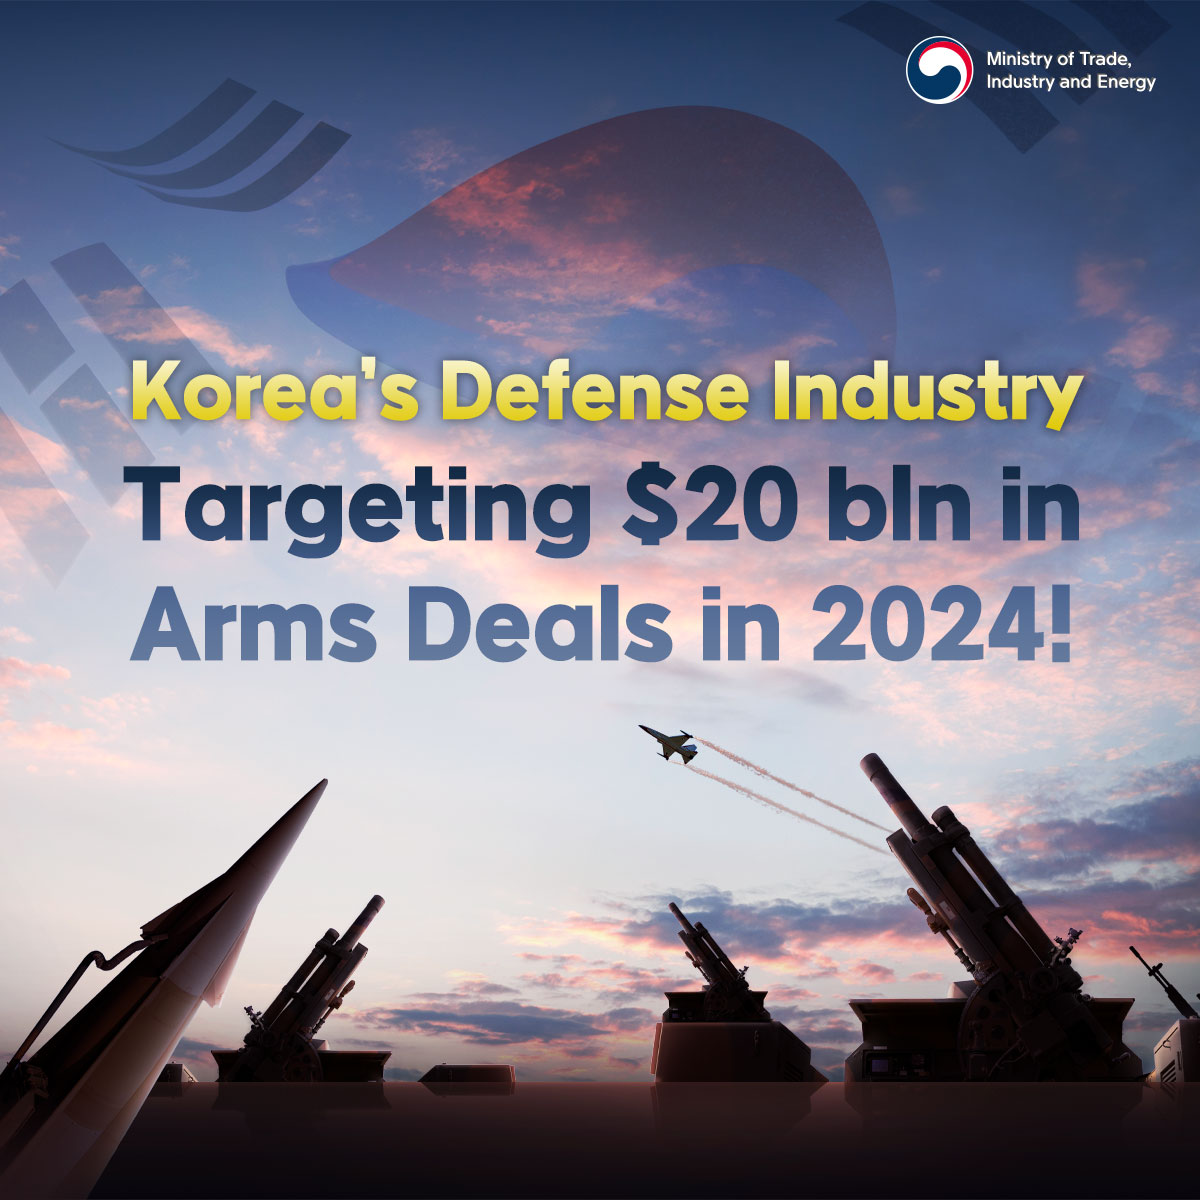 Korea's defense industry targeting $20 bln in export deals for 2024